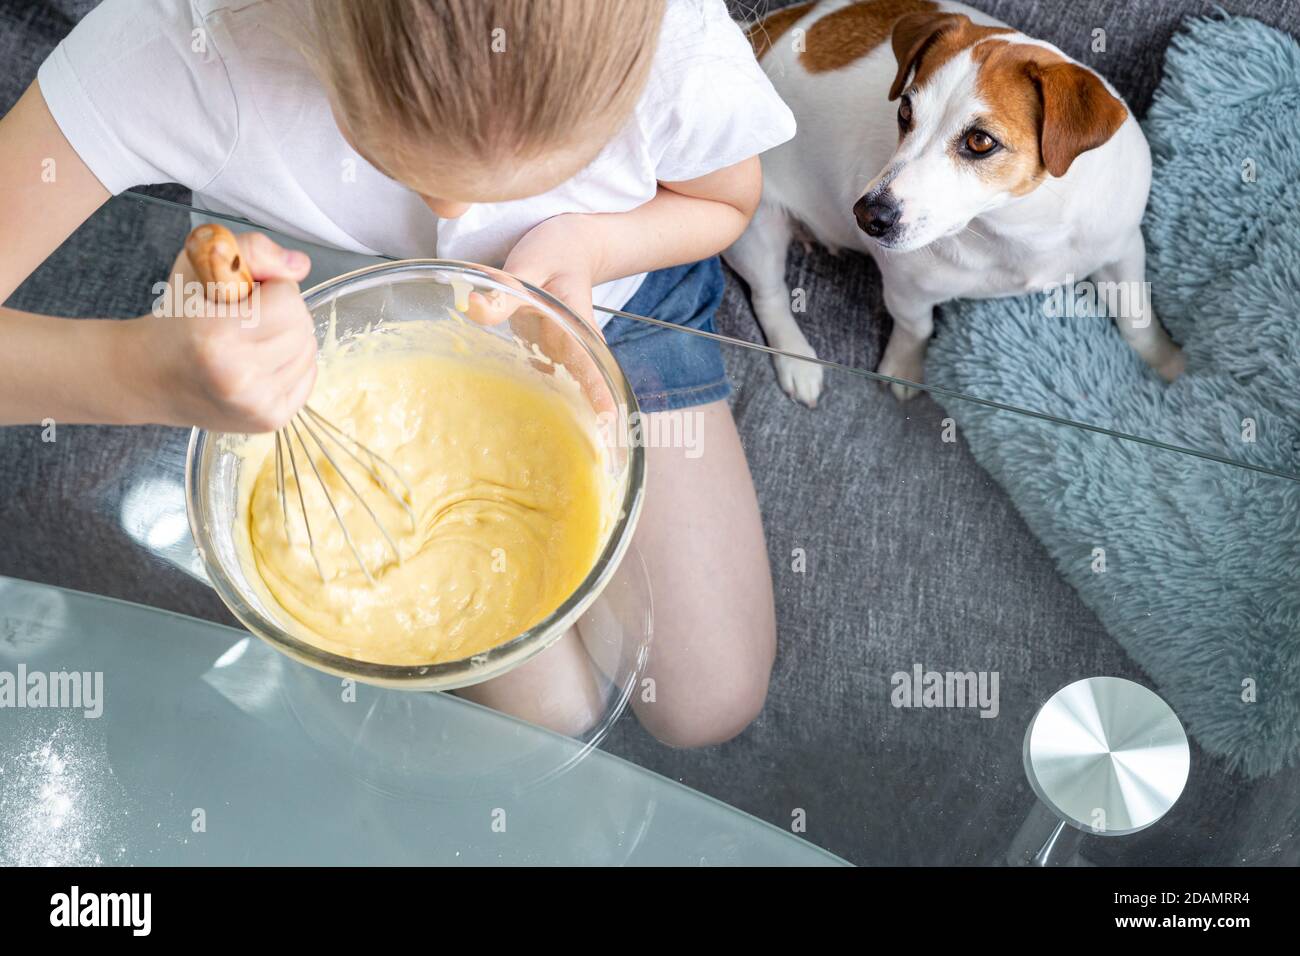 Una ragazza in una T-shirt bianca mescola l'impasto con una frusta in una ciotola di vetro, e un cane affamato, Jack Russell, si trova nelle vicinanze. Cucinare a casa. Pasta per waffle. Foto Stock